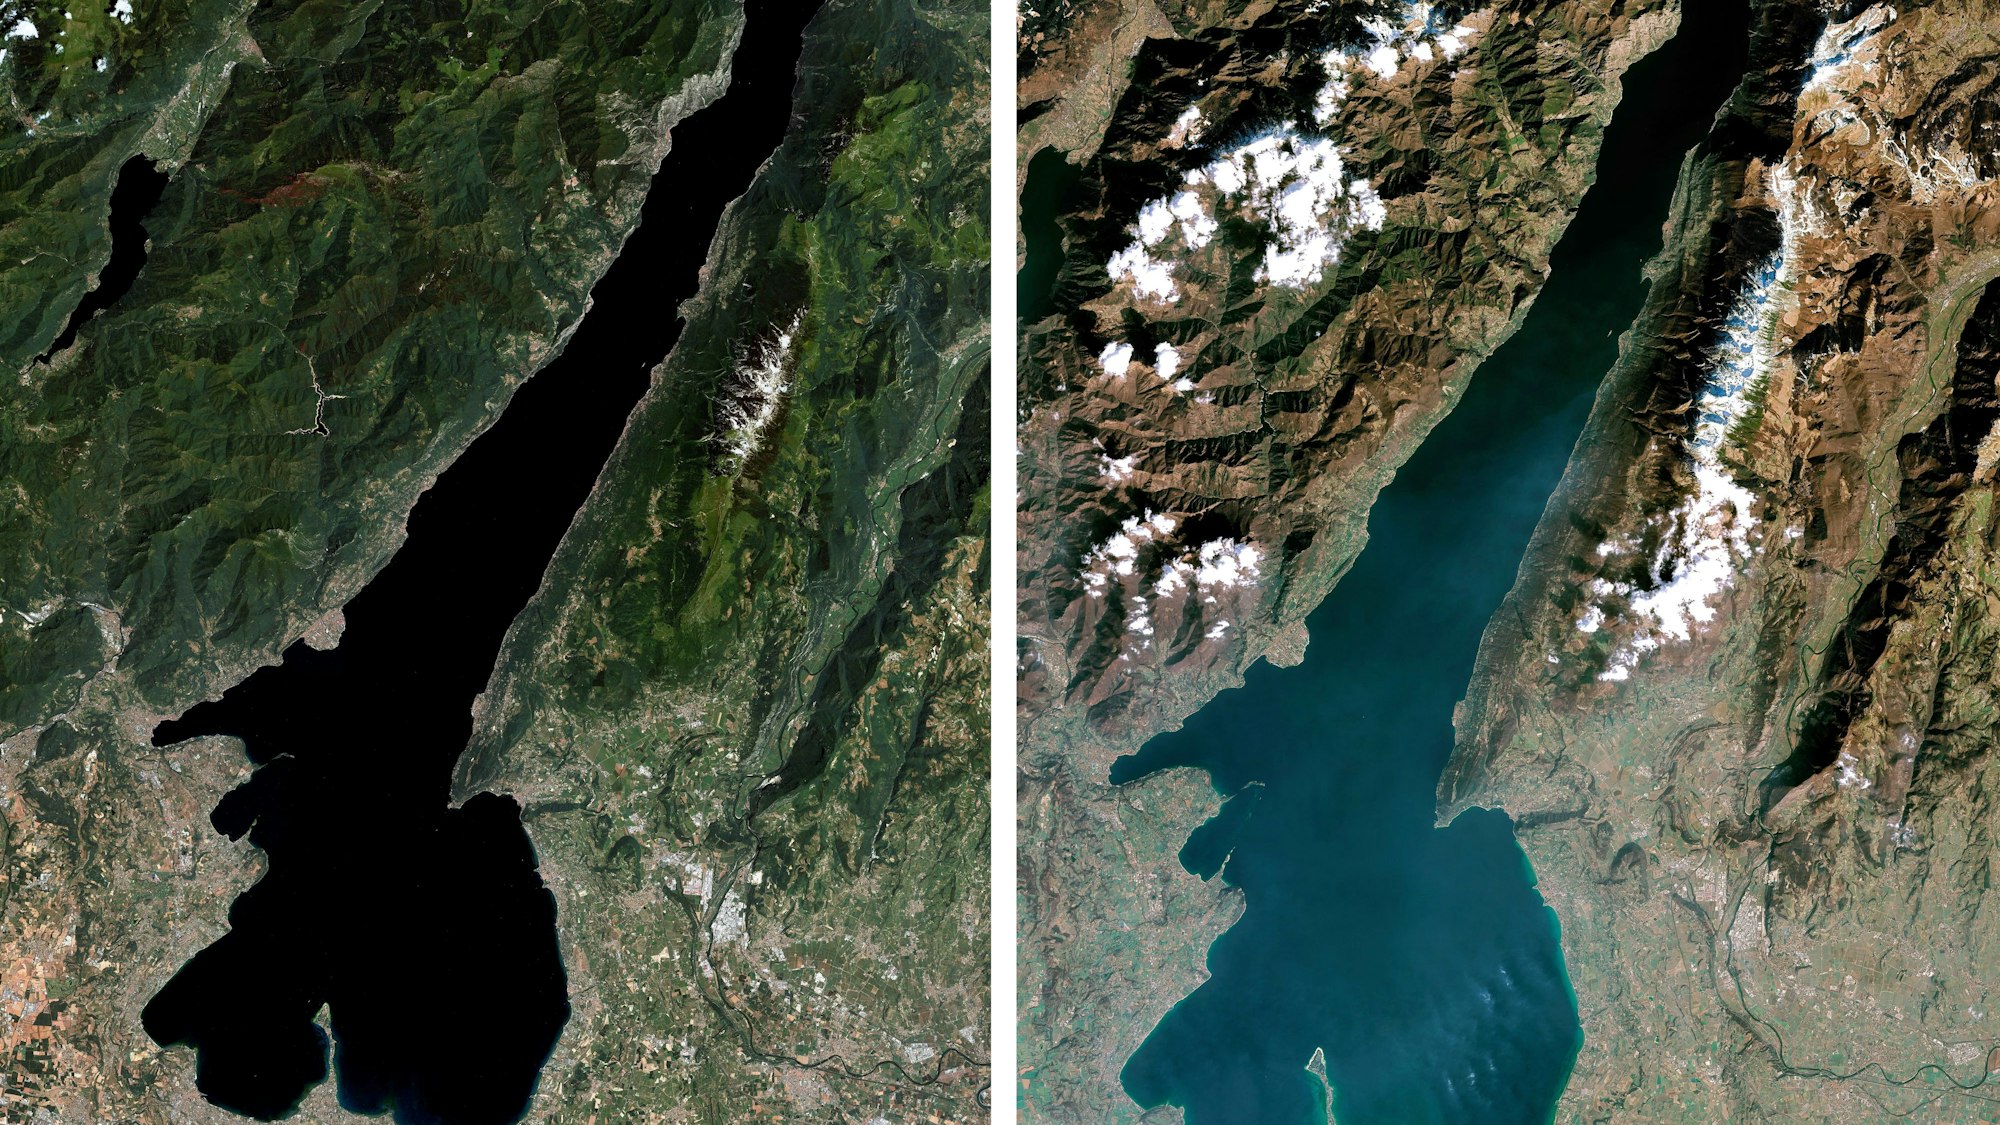 Der Gardasee im Juni 2022 und im März 2023: Vor allem in den Küstenbereichen ist die enorme Trockenheit deutlich zu erkennen. Auch das türkis-schimmernde Wasser deutet auf einen niedrigen Wasserstand hin.dpa